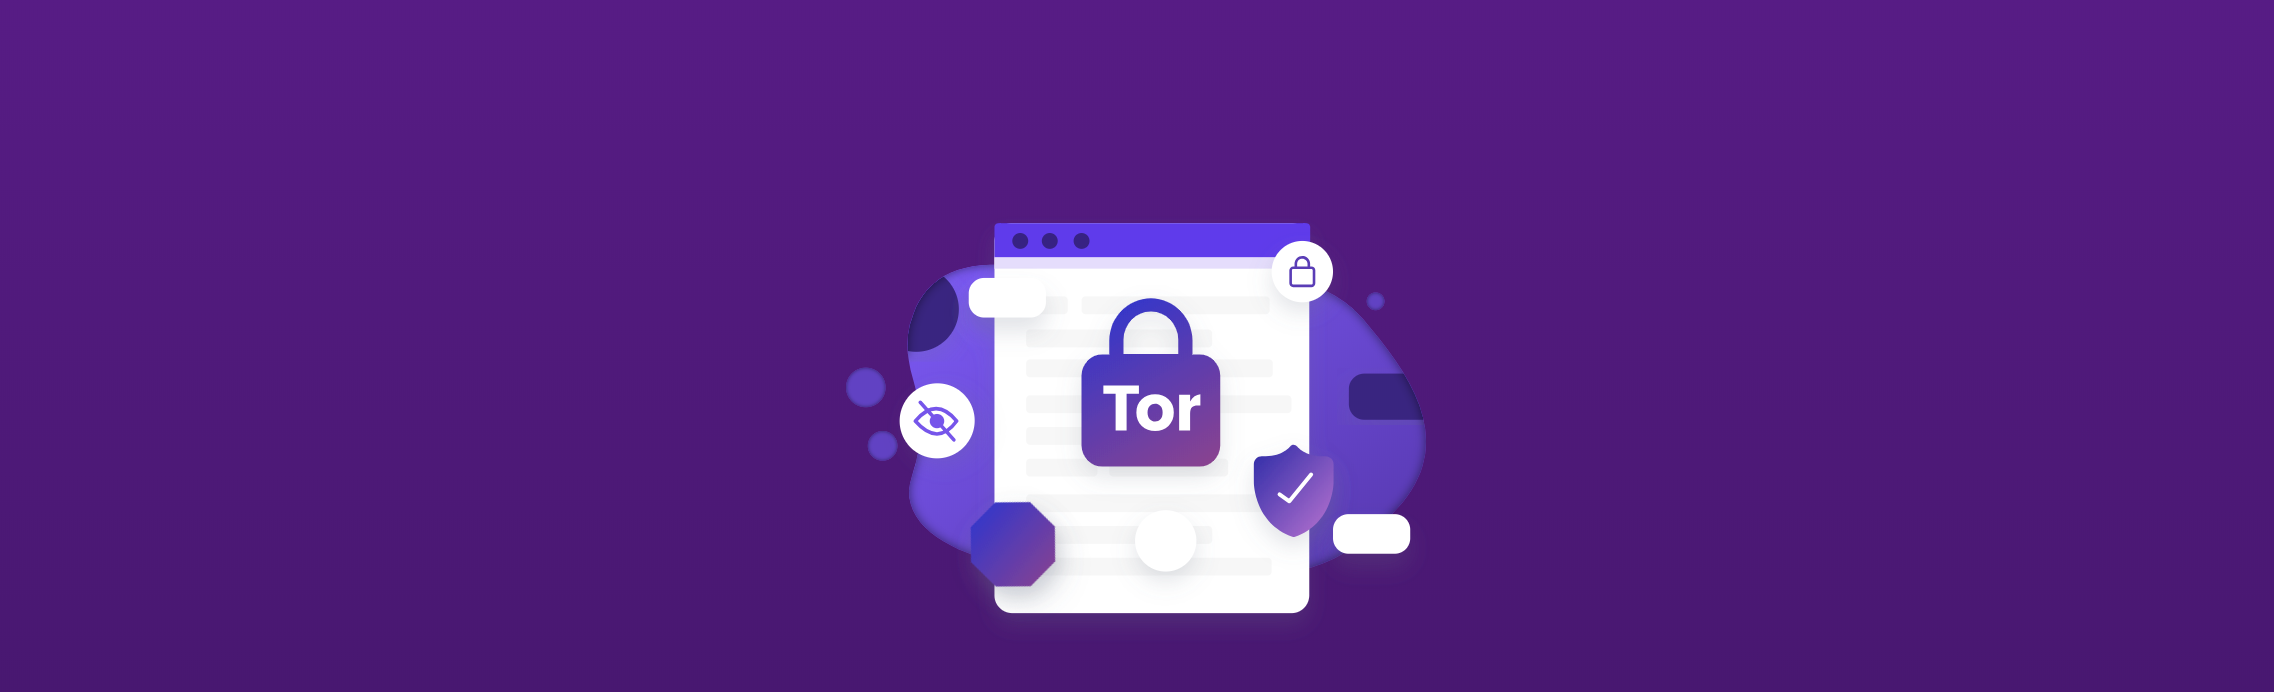 Tor browser переводчик gidra ссылка на гидру для тор